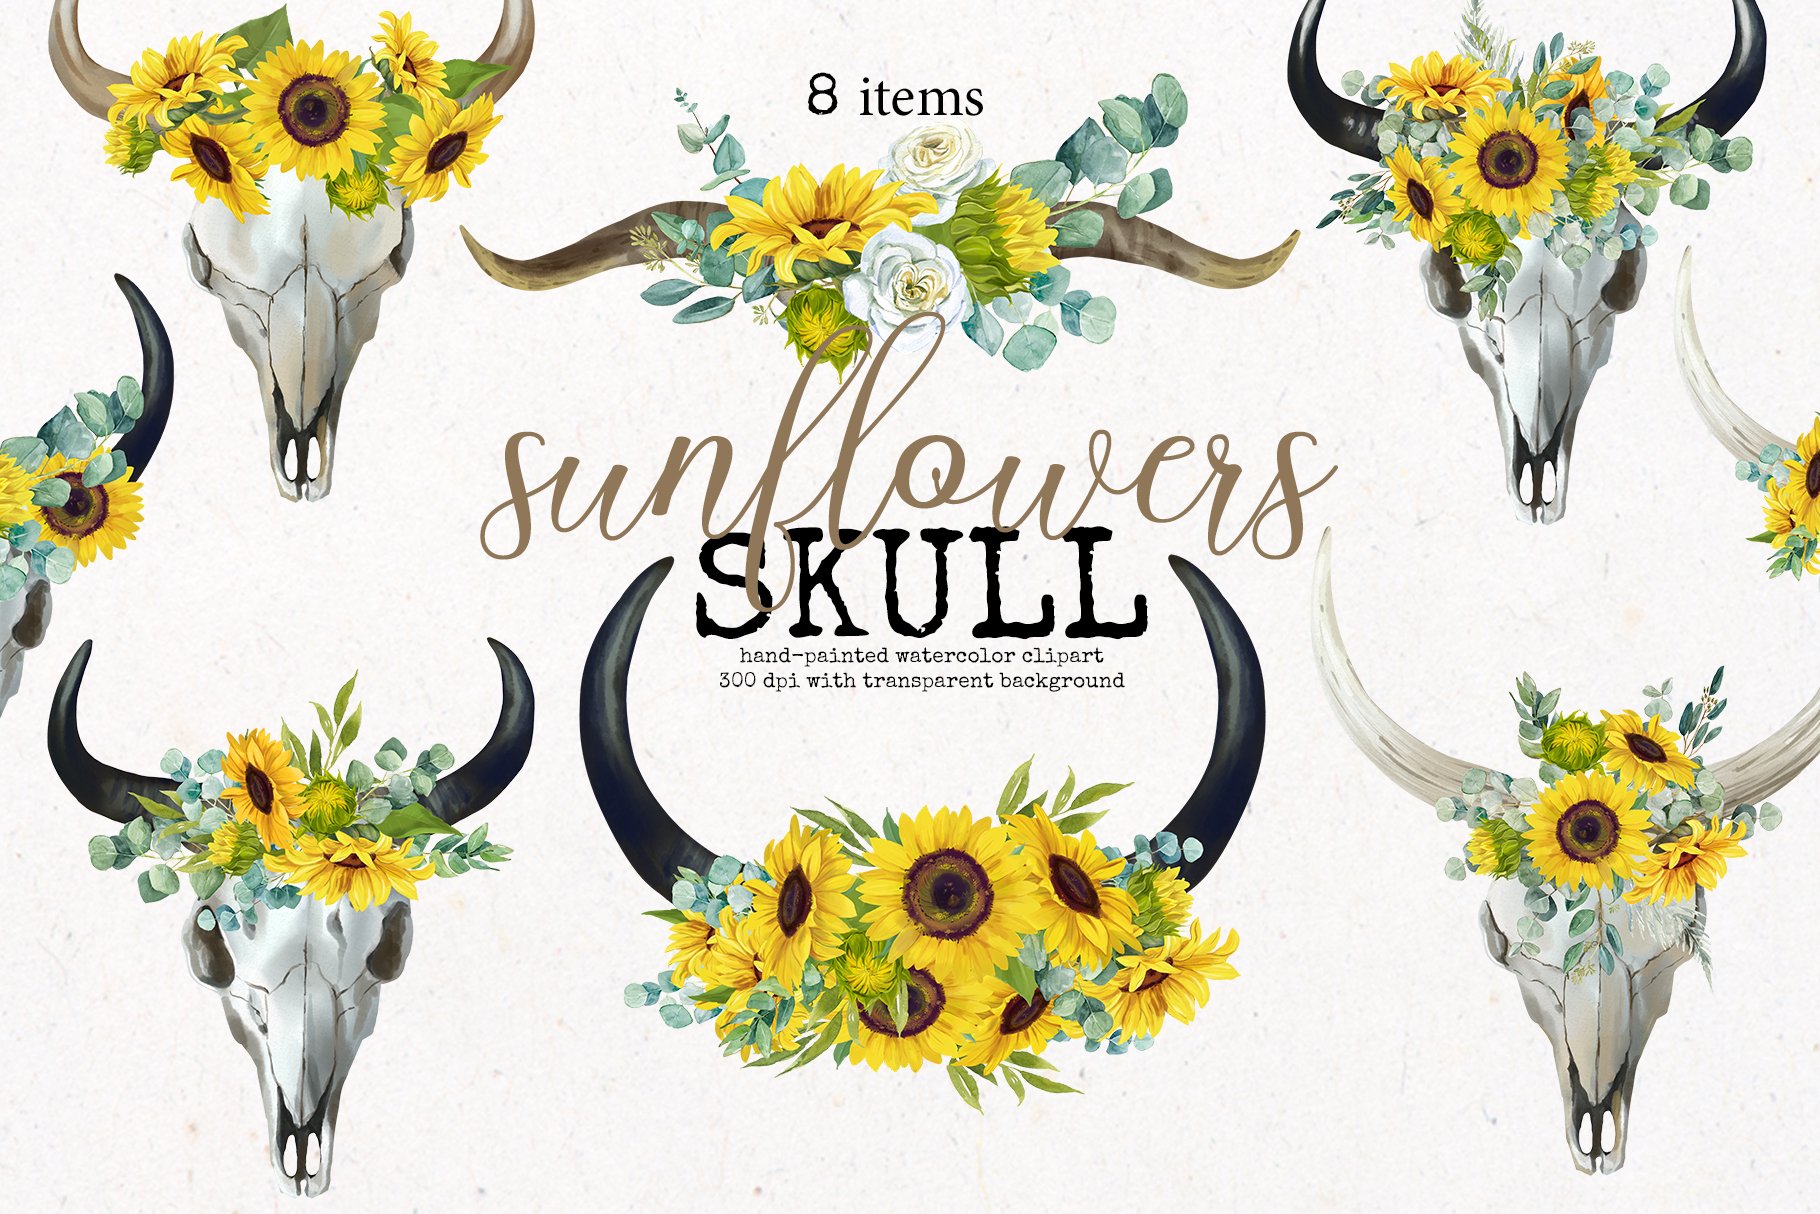 Boho Bull Skull with Sunflowers cover image.